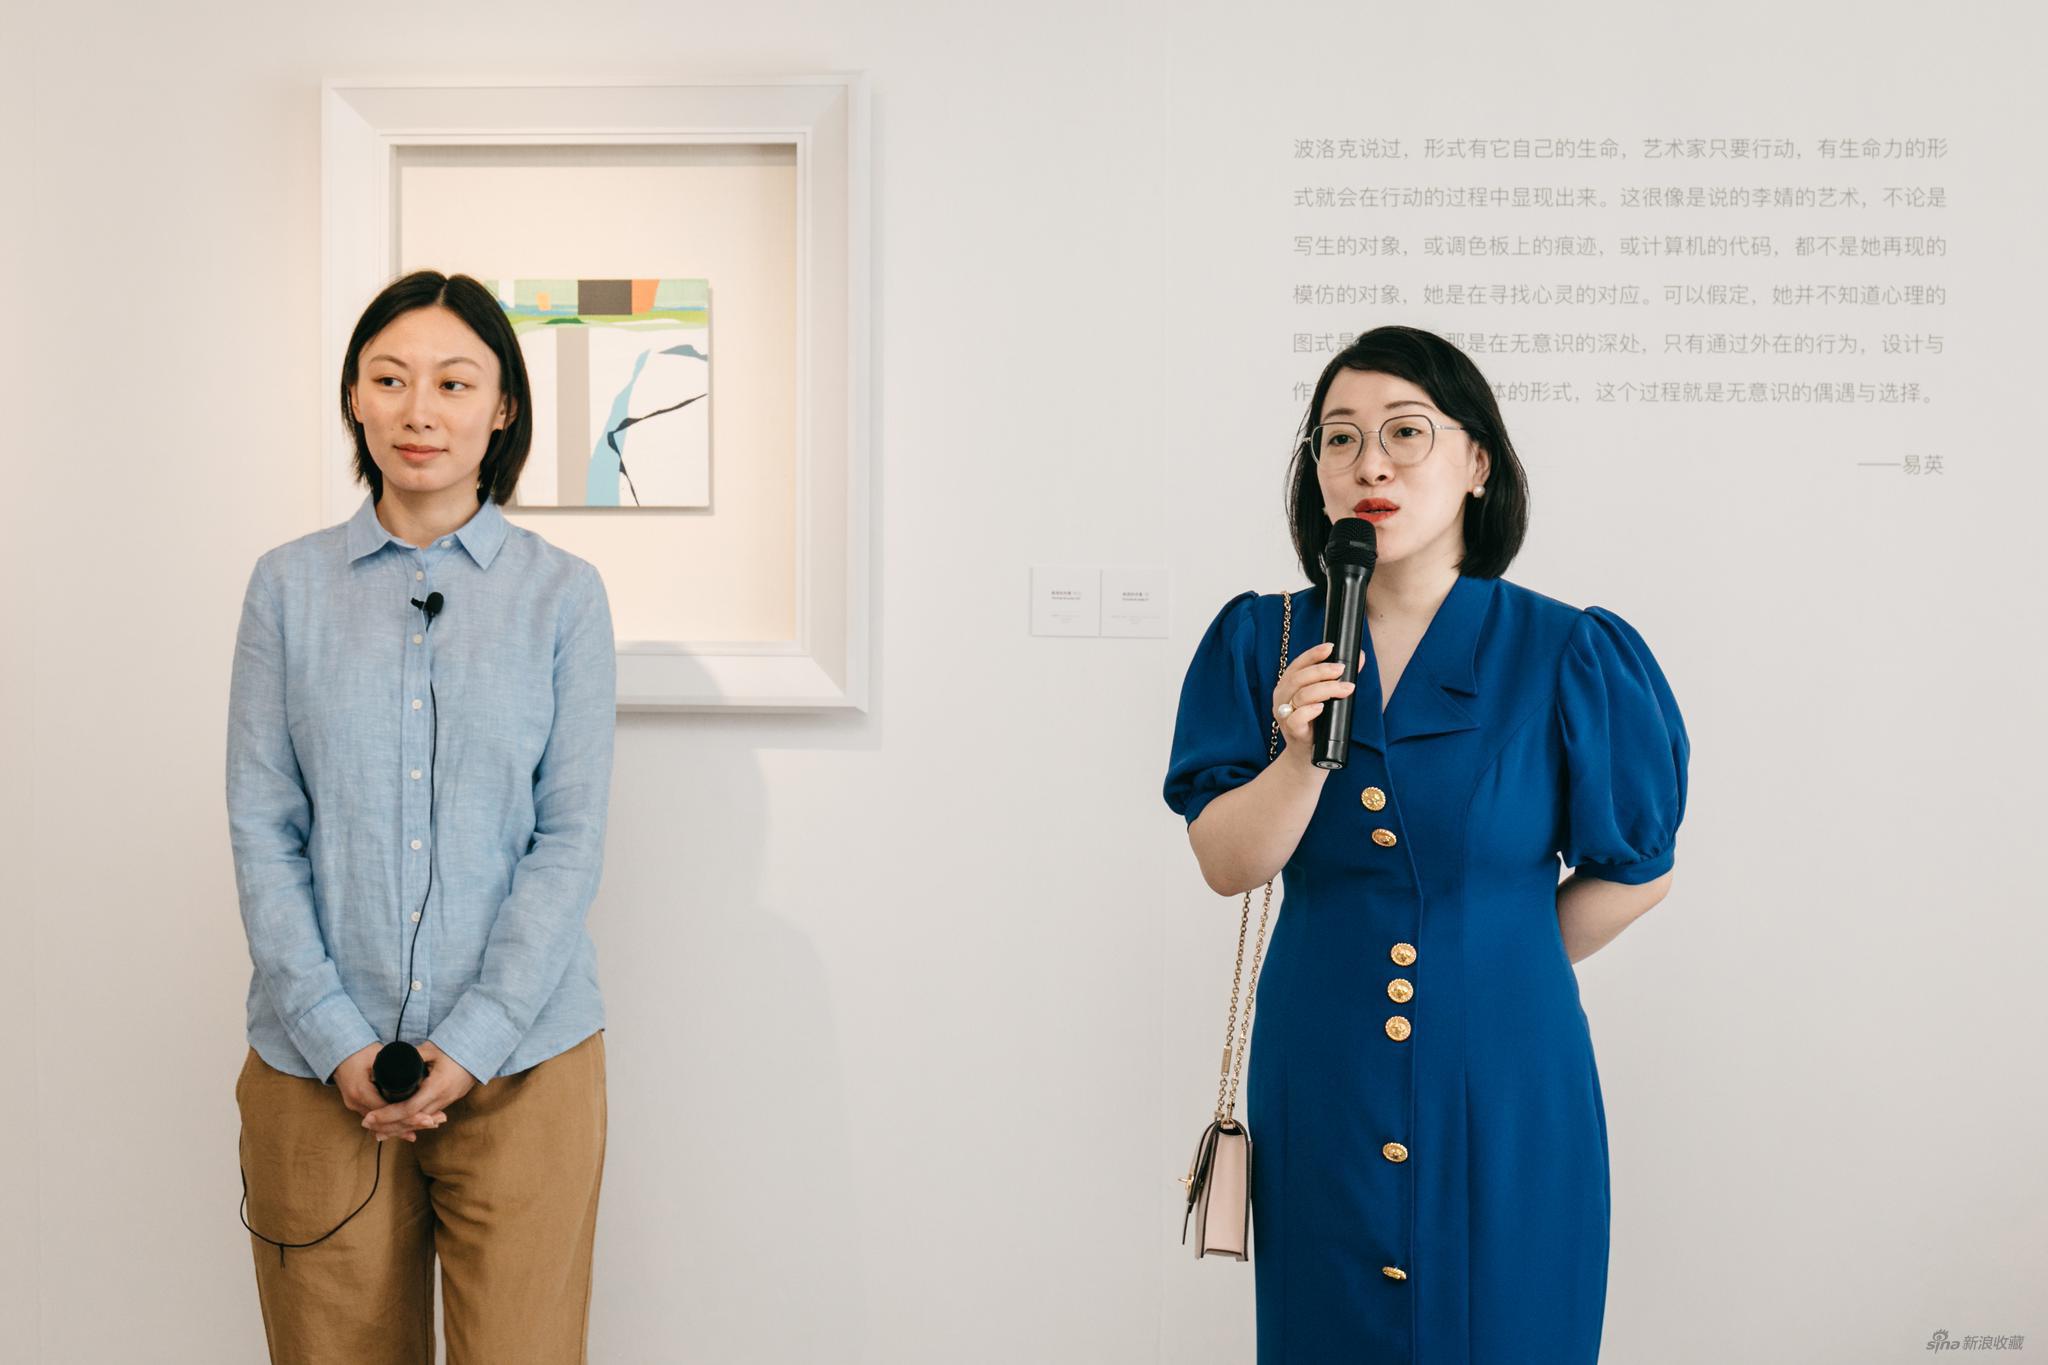 艺术家李婧（左）、策展人晏燕（右）媒体导览现场